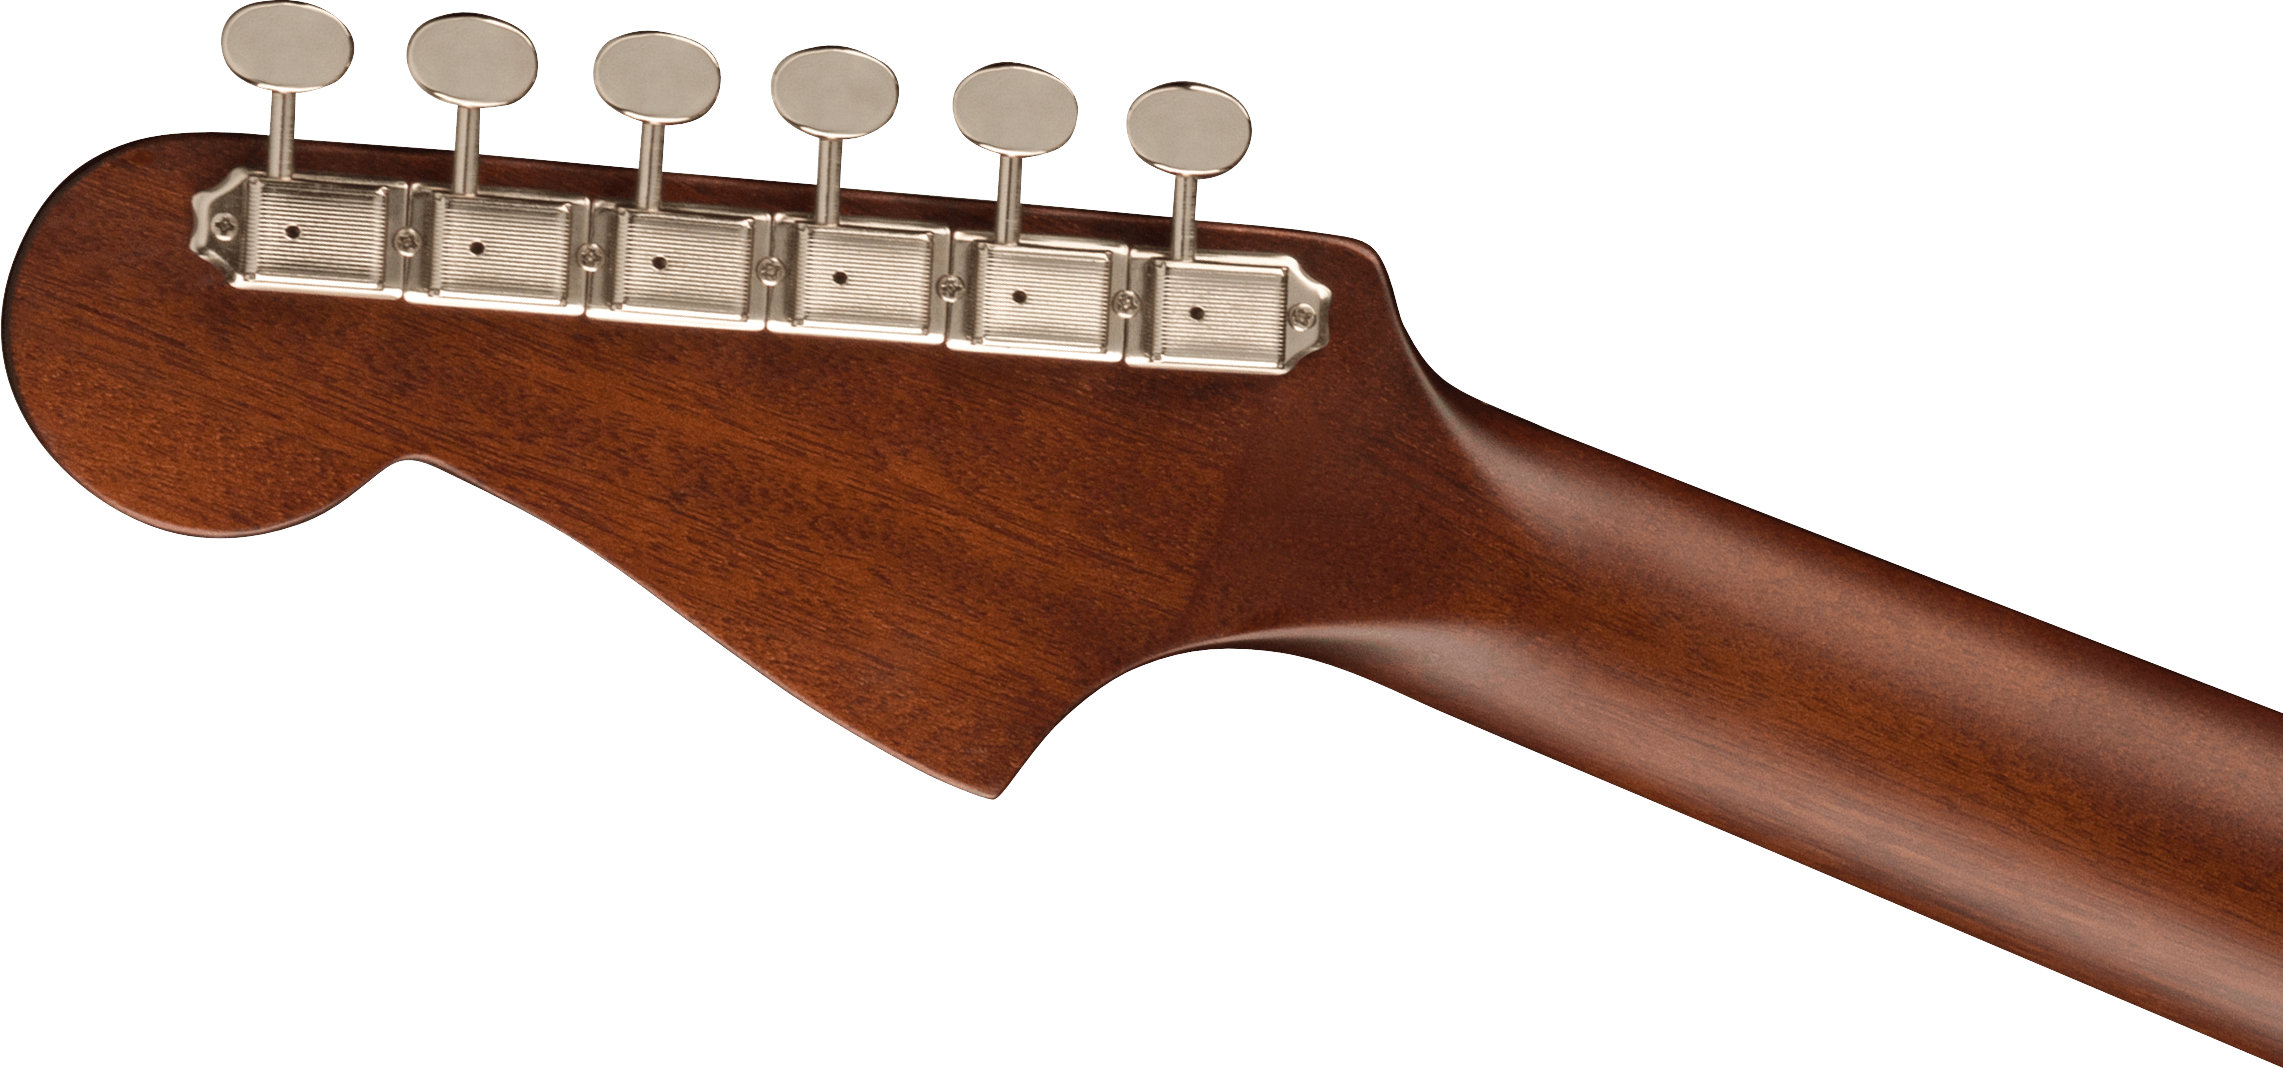 Fender California Series Malibu Player Acoustic-Electric Guitar, Natural